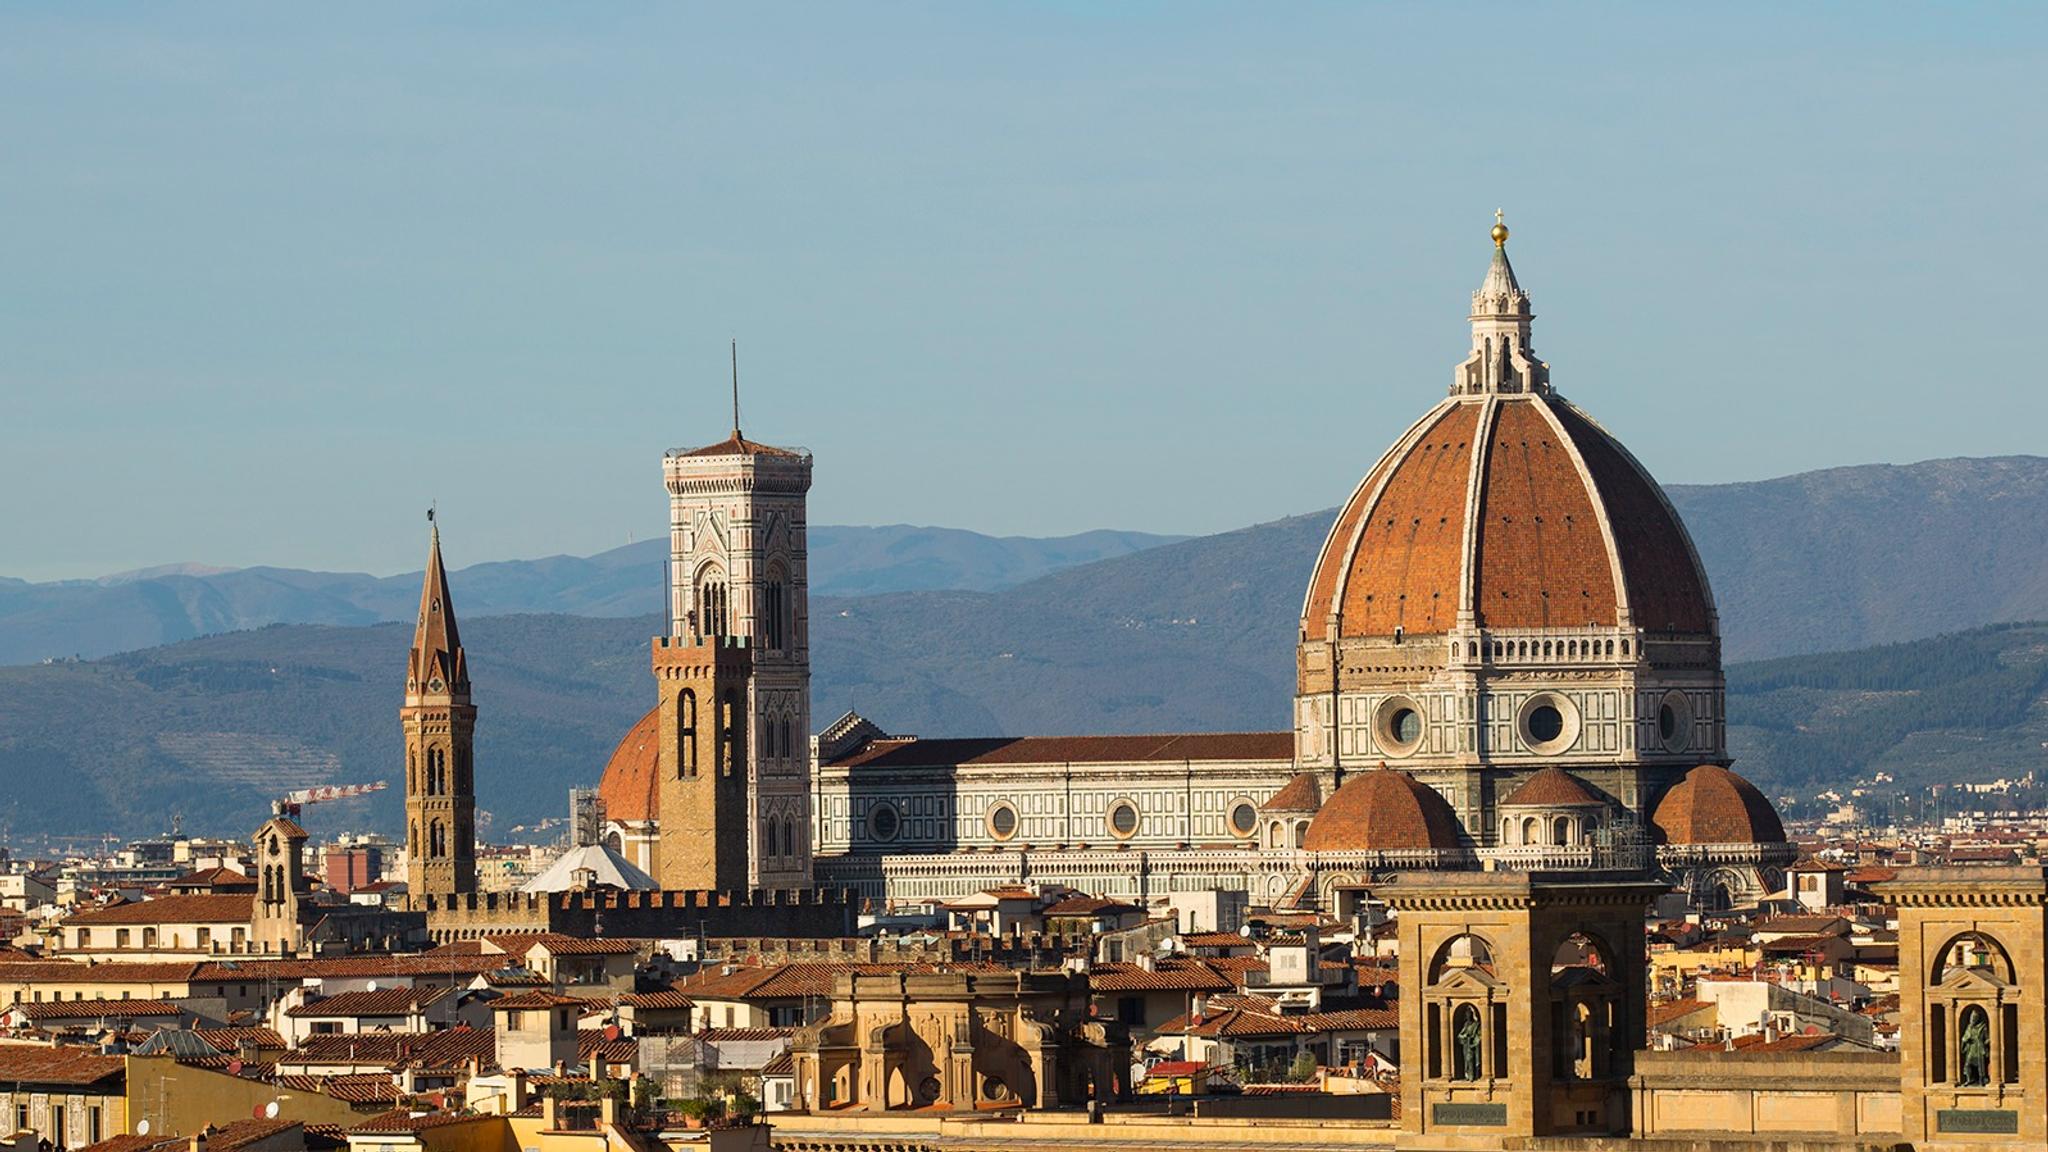 Vista de Florencia desde Piazzale Michelangelo